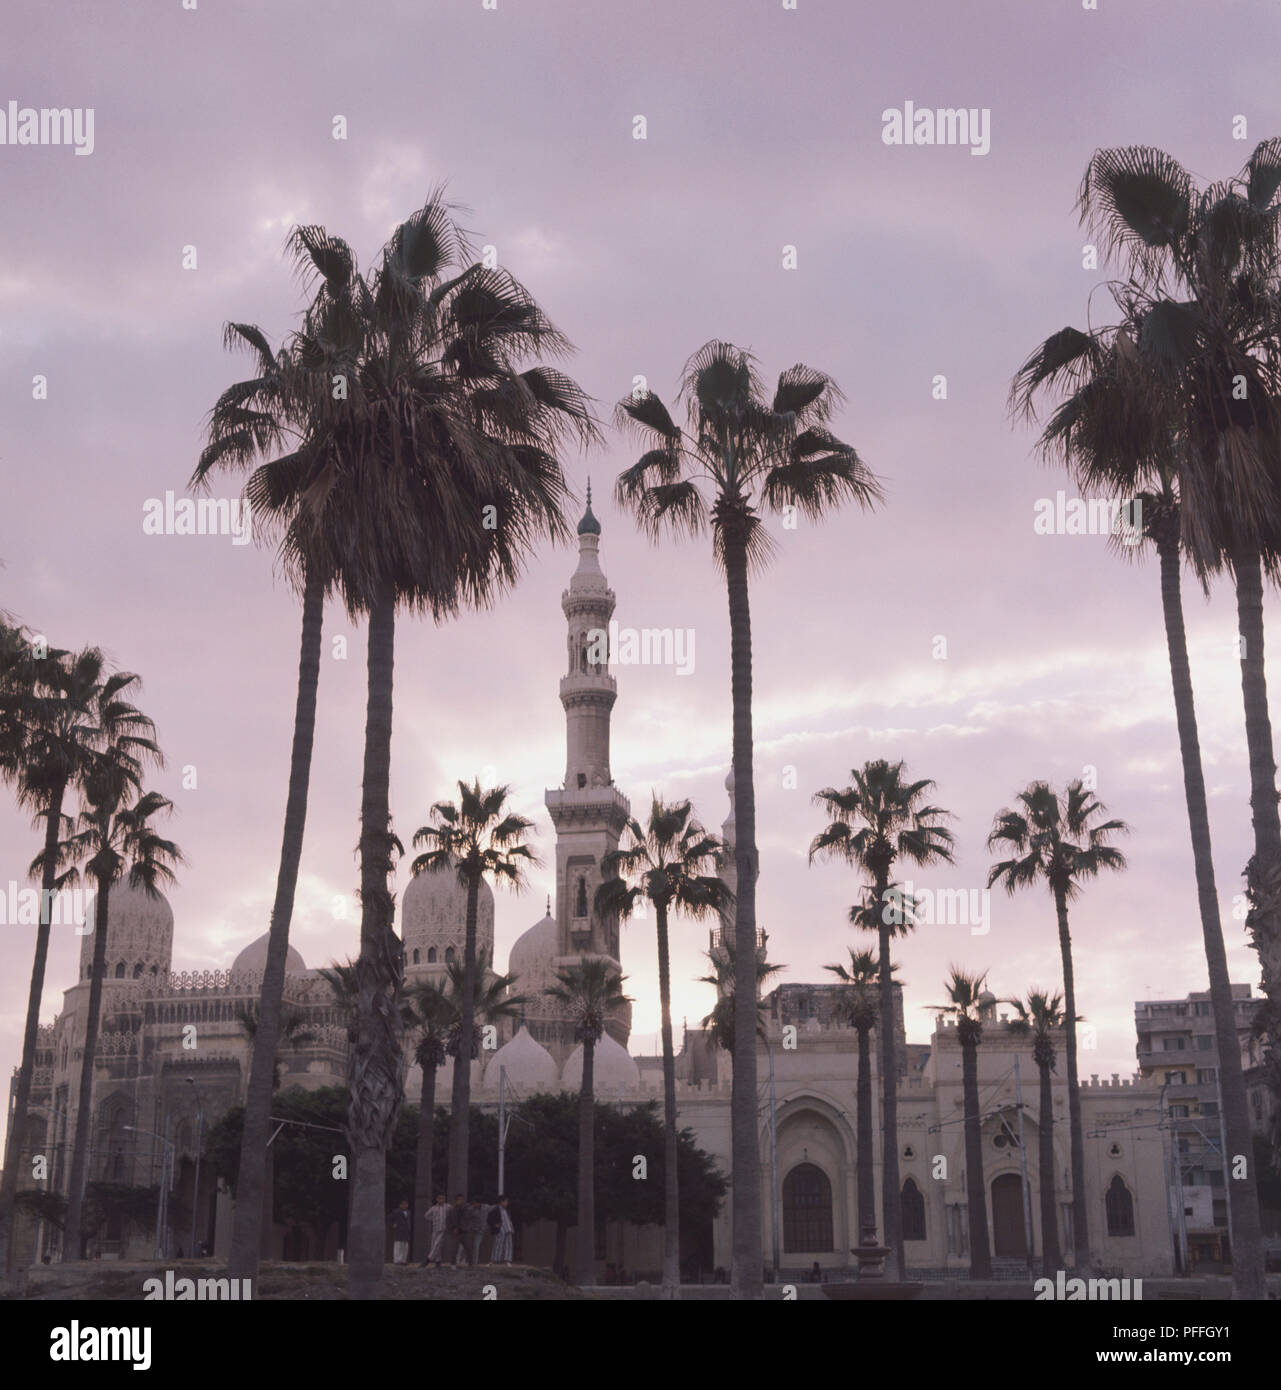 Egypte, Alexandrie, mosquée d'Abou El-Abbas al-Mursi, construit par des algériens sur la tombe de la 13e siècle saint Andalusan Ahmed Abu al-Abbas al-Mursi, en 1775, palm arbres en premier plan, coucher de ciel au-dessus. Banque D'Images